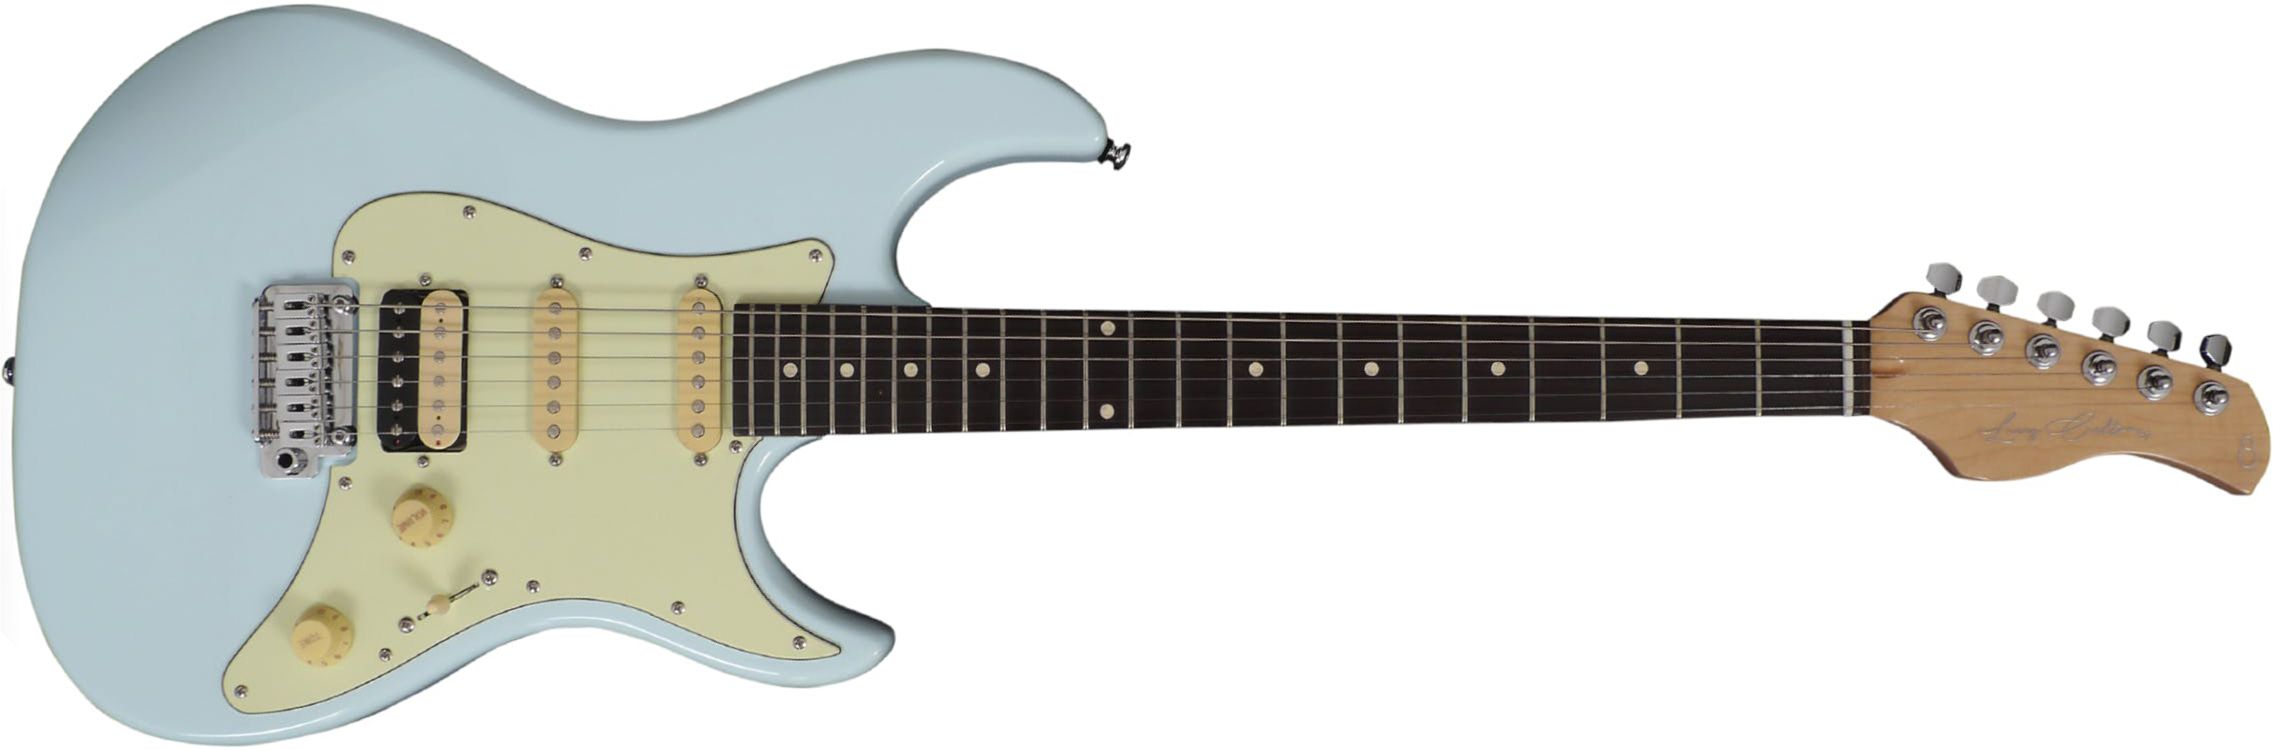 Sire Larry Carlton S3 Signature Hss Trem Rw - Sonic Blue - Guitarra eléctrica con forma de str. - Main picture